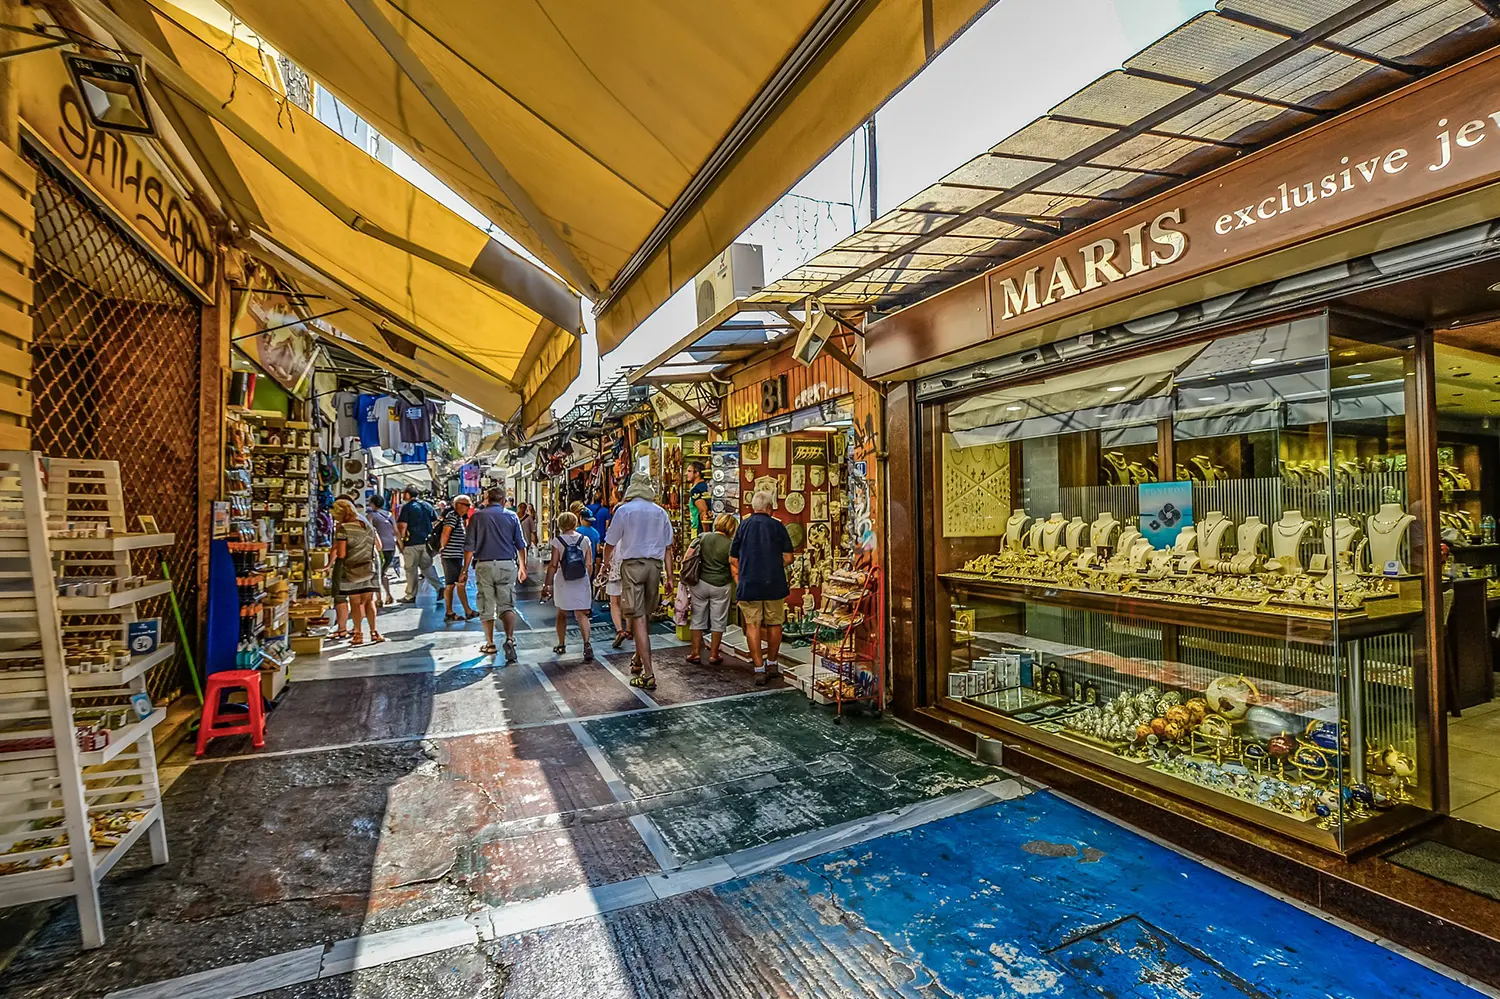 Markets in Greece - Wheel the World